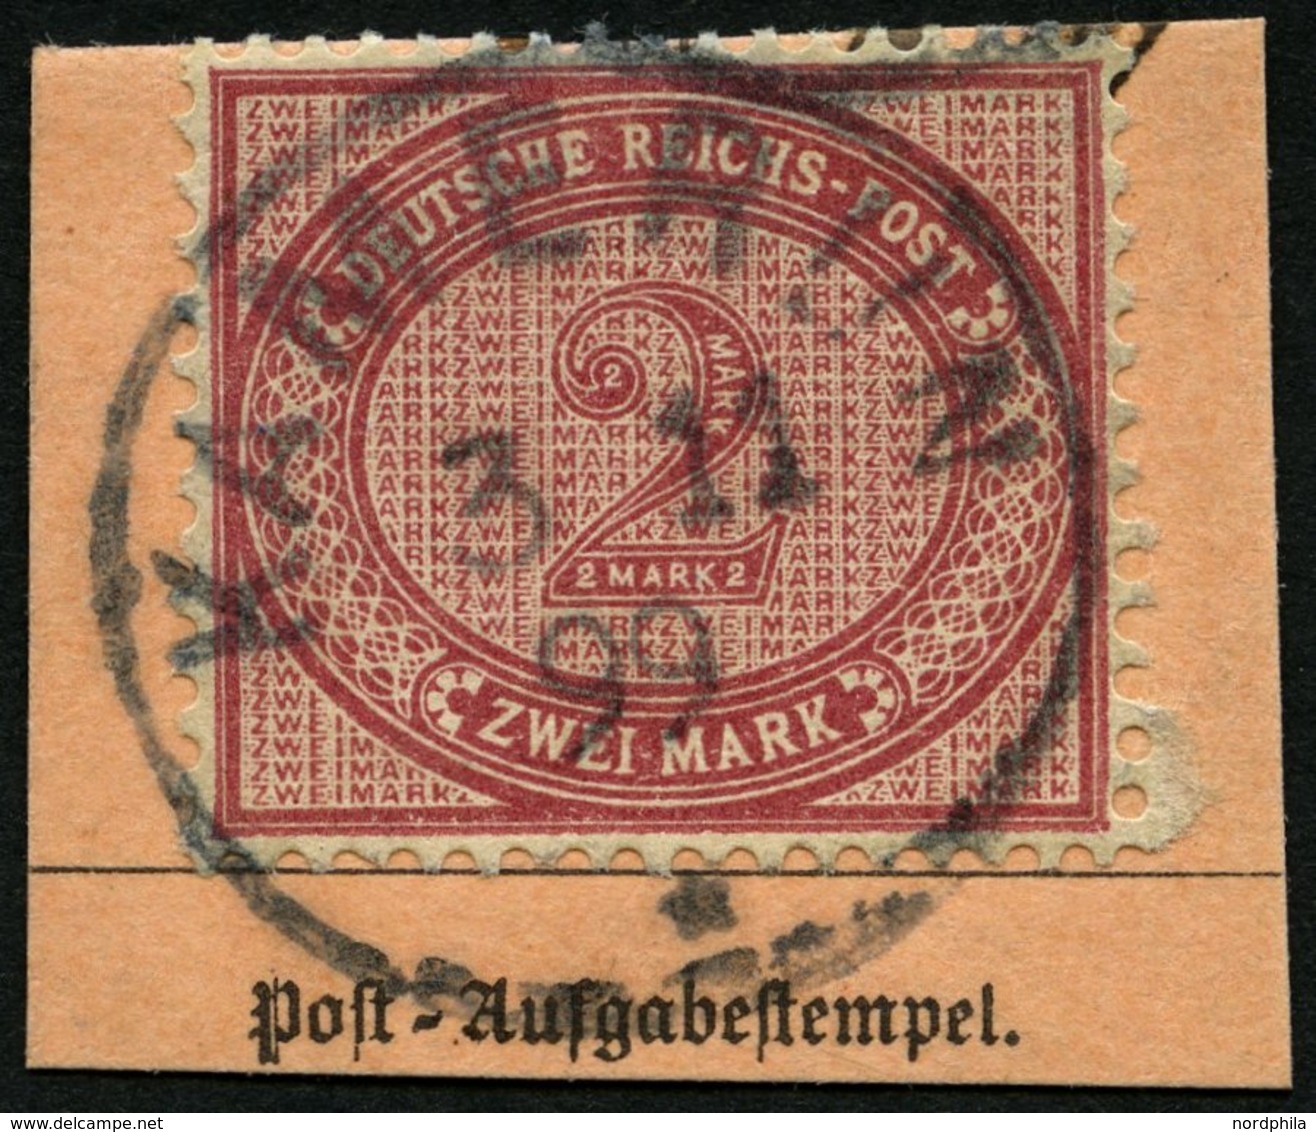 KAMERUN V 37e BrfStk, 1899, 2 M. Dunkelrotkarmin, Stempel KAMERUN, Postabschnitt, Pracht, Mi. (200.-) - Camerun